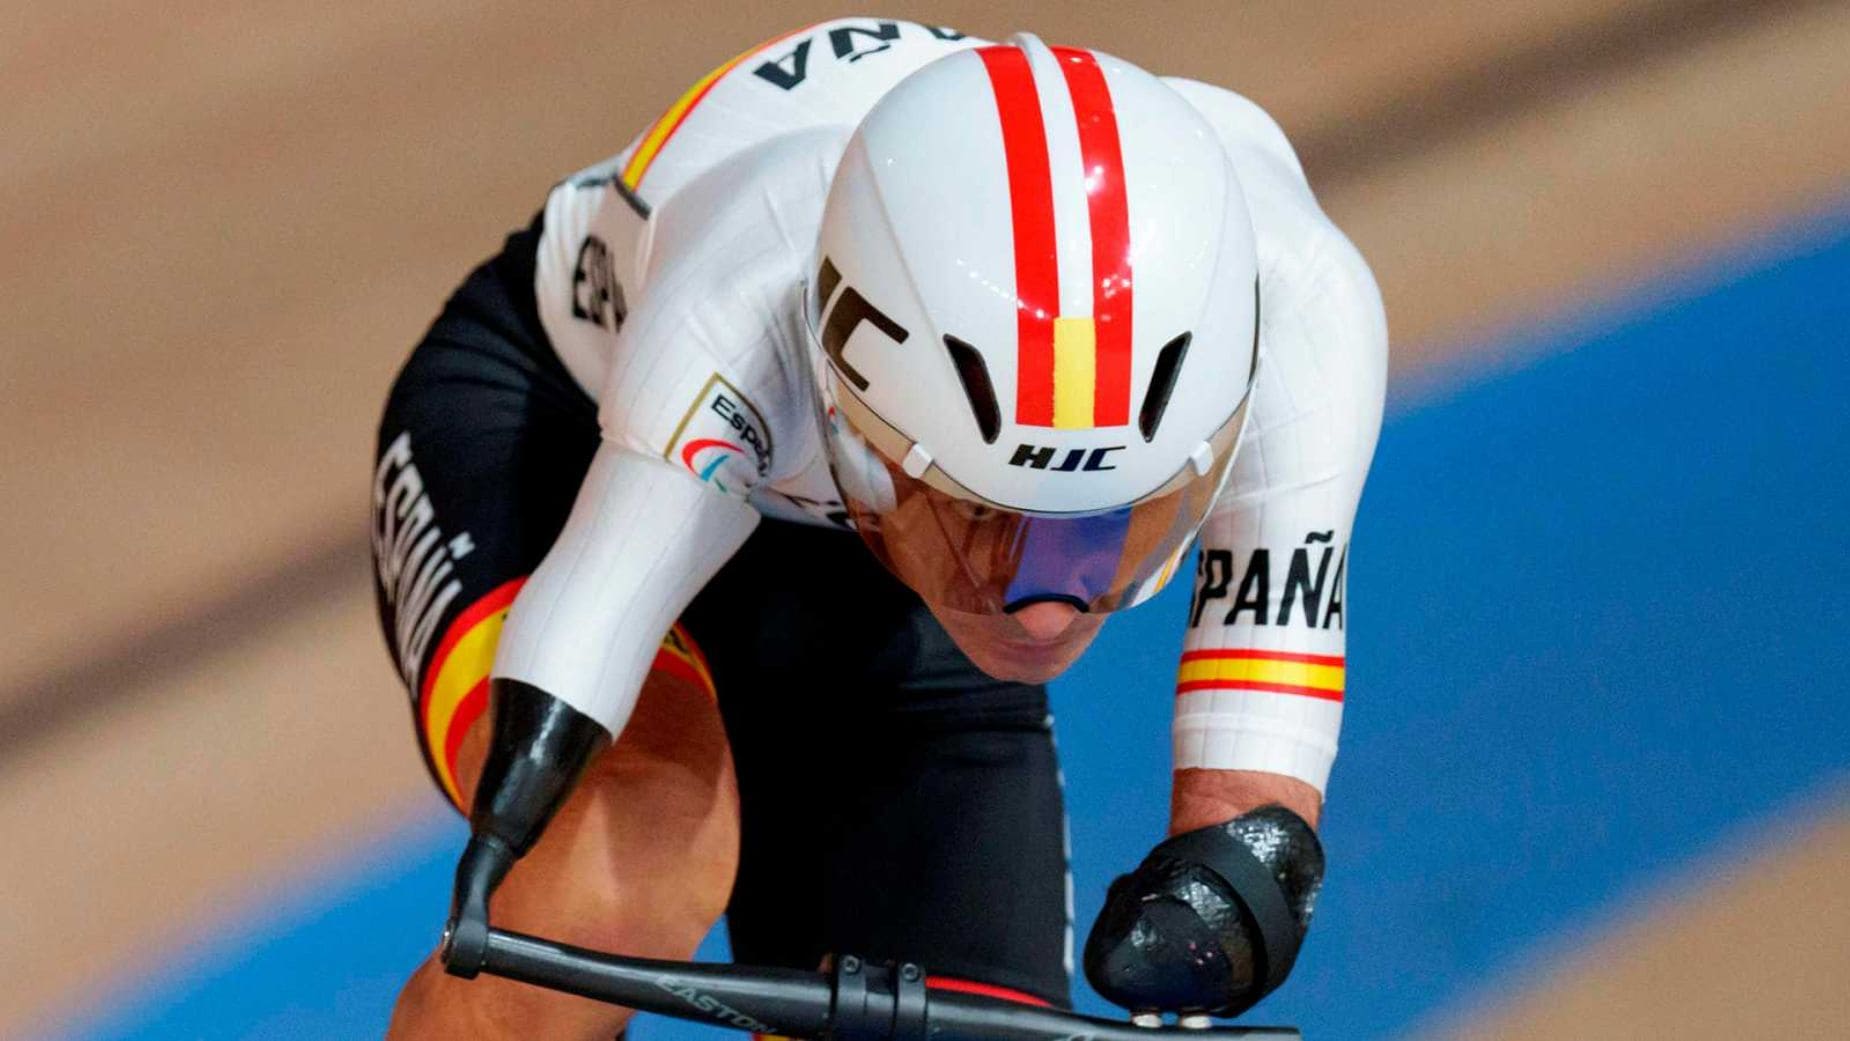 La selección española de ciclismo paralímpico se prepara Campeonato del Mundo de Pista de Ciclismo Paralímpico